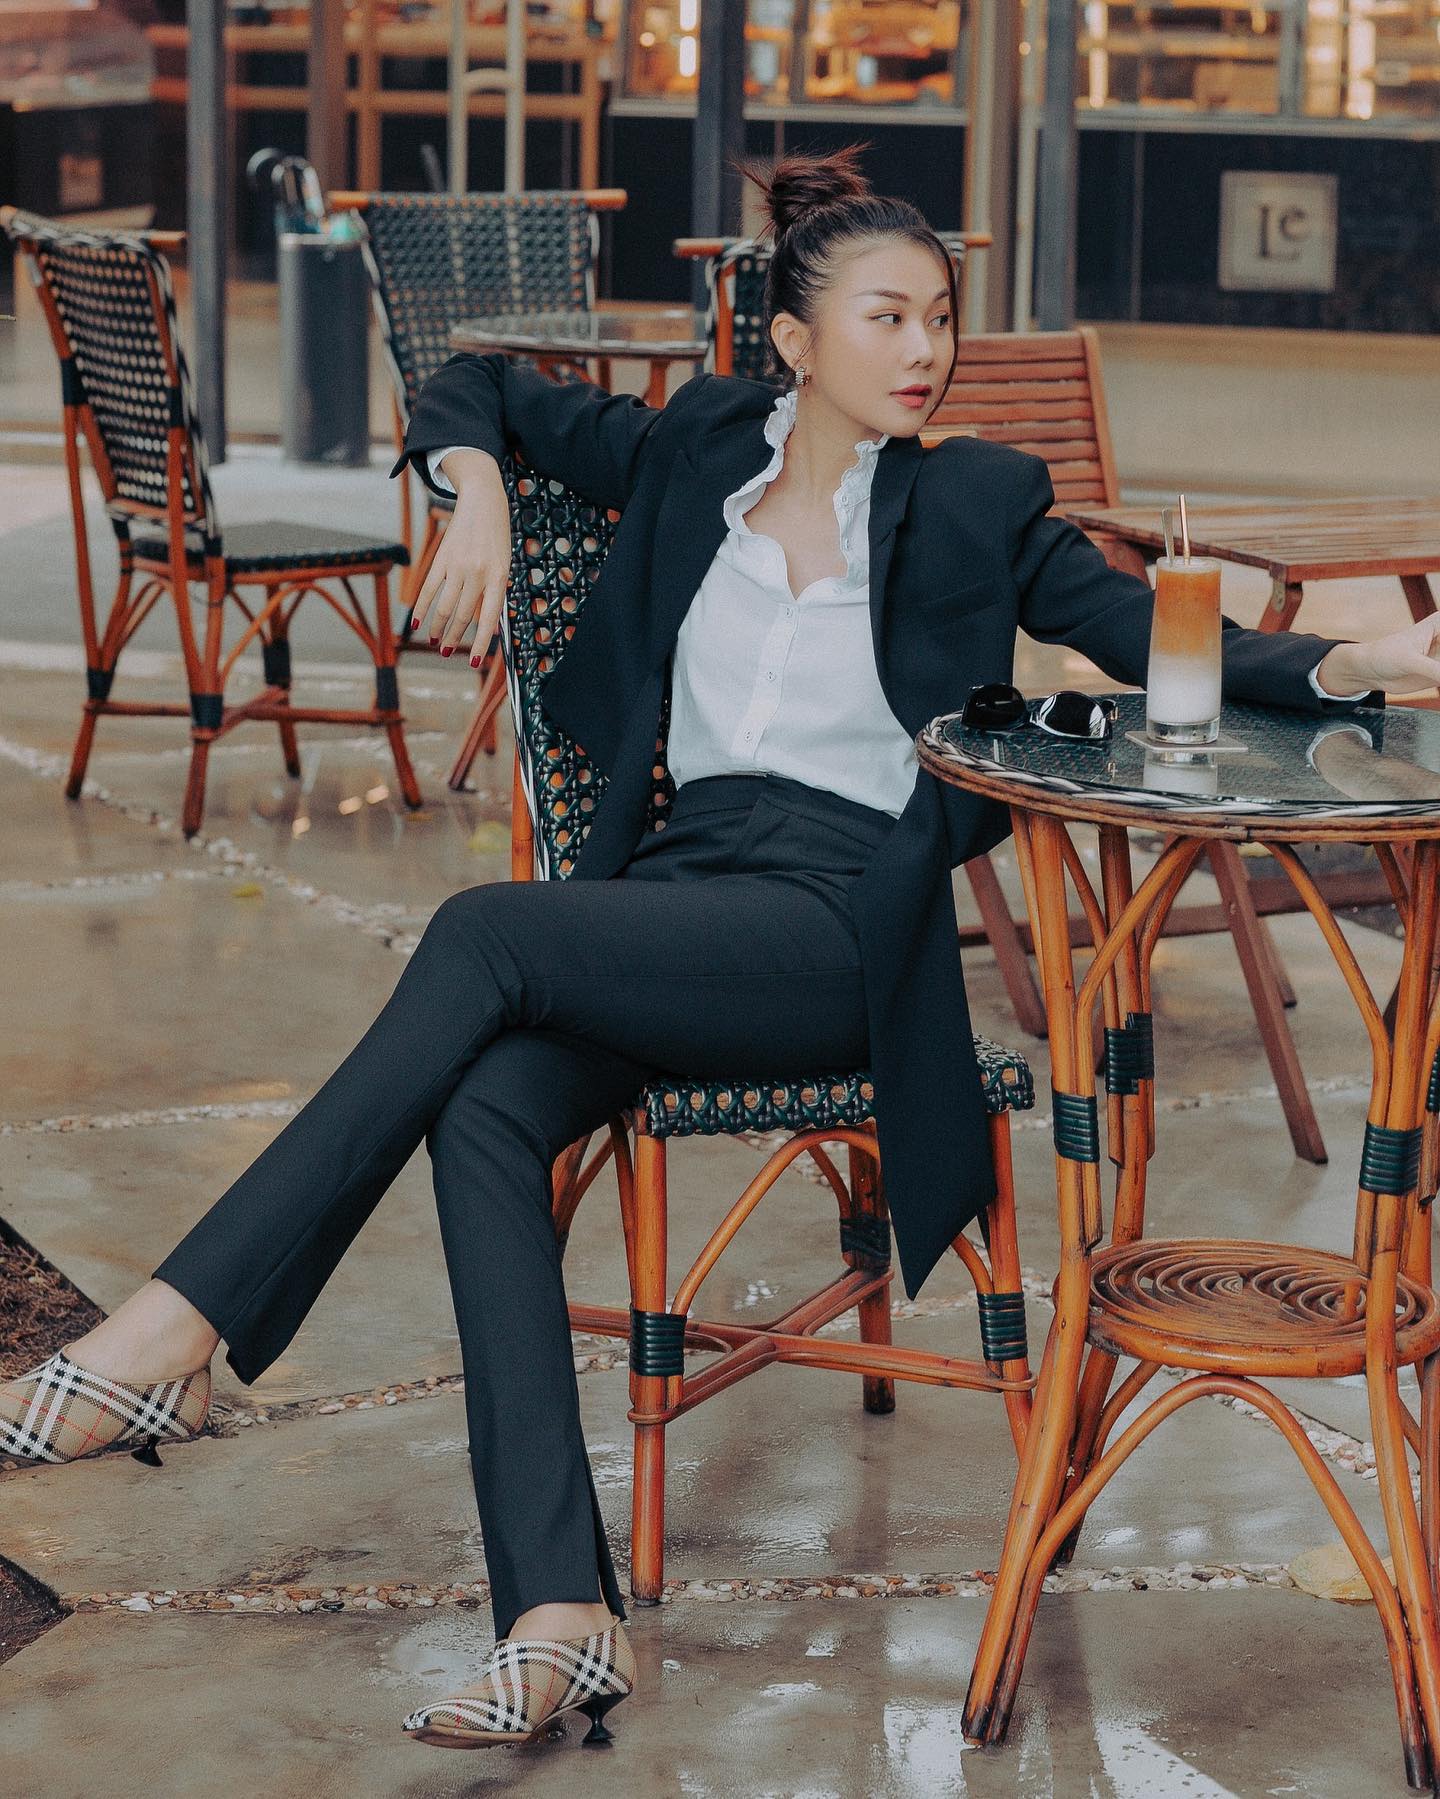 Khi diện nguyên bộ suit đen, Thanh Hằng cũng không ngại mix với áo sơ mi trắng nhưng cô sẽ chọn chiếc áo có phần cổ bèo nhún cách điệu tạo nét phá cách kết hợp cùng tóc búi cao và giày đế thấp.